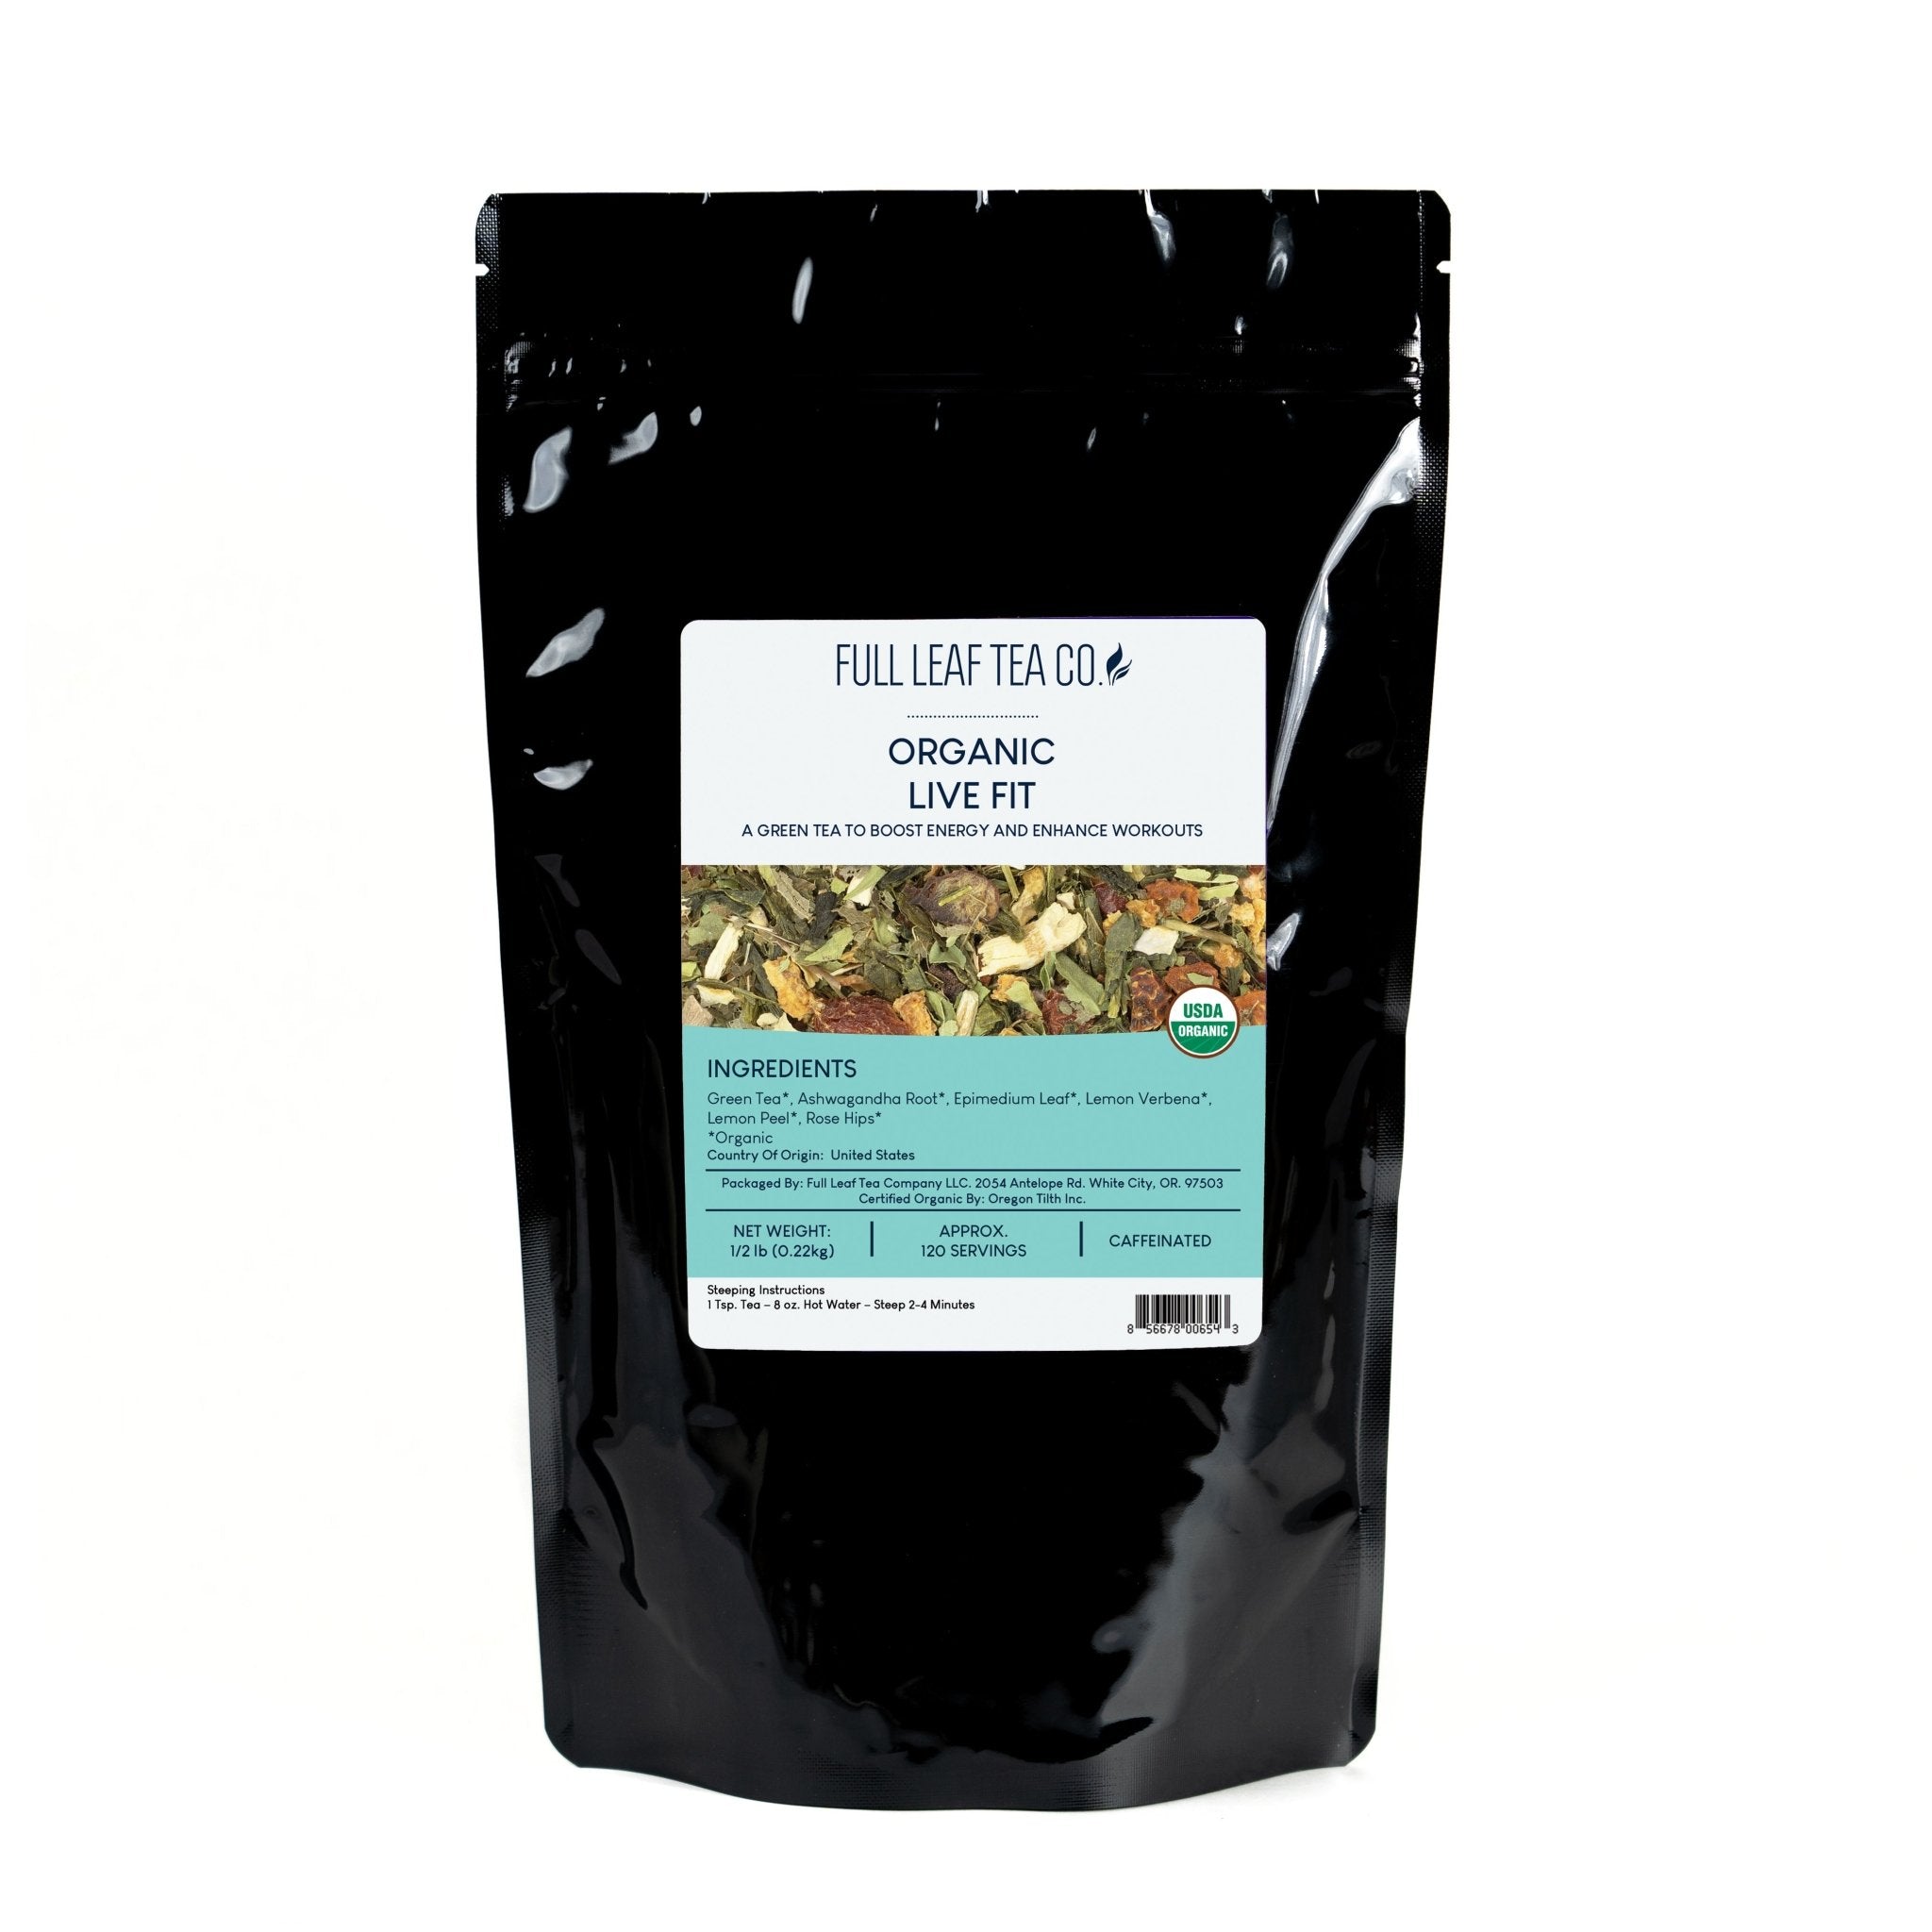 Organic Live Fit Tea - Loose Leaf Tea - Full Leaf Tea Company